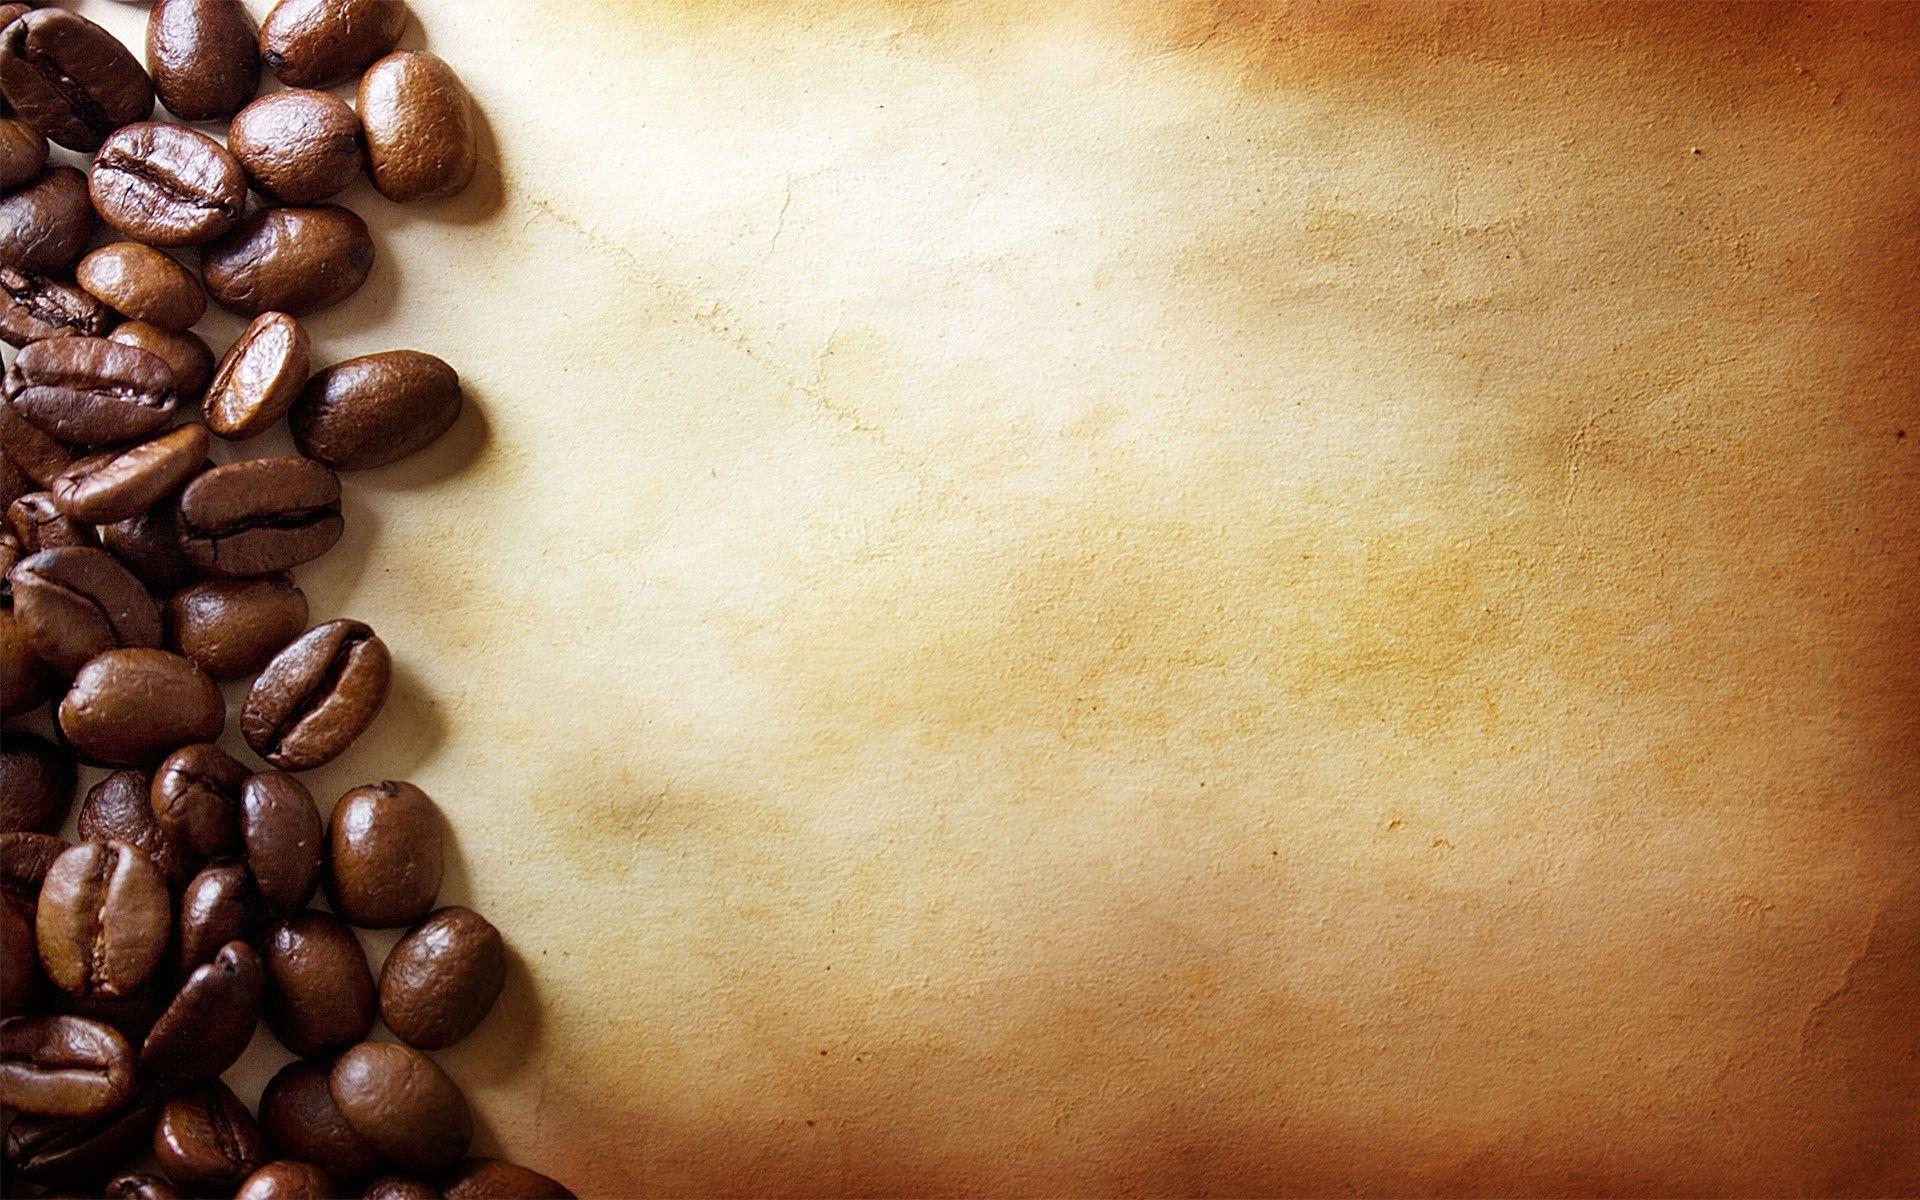 コーヒーの壁紙,カフェイン,ジャワコーヒー,褐色,単一起源のコーヒー,食物